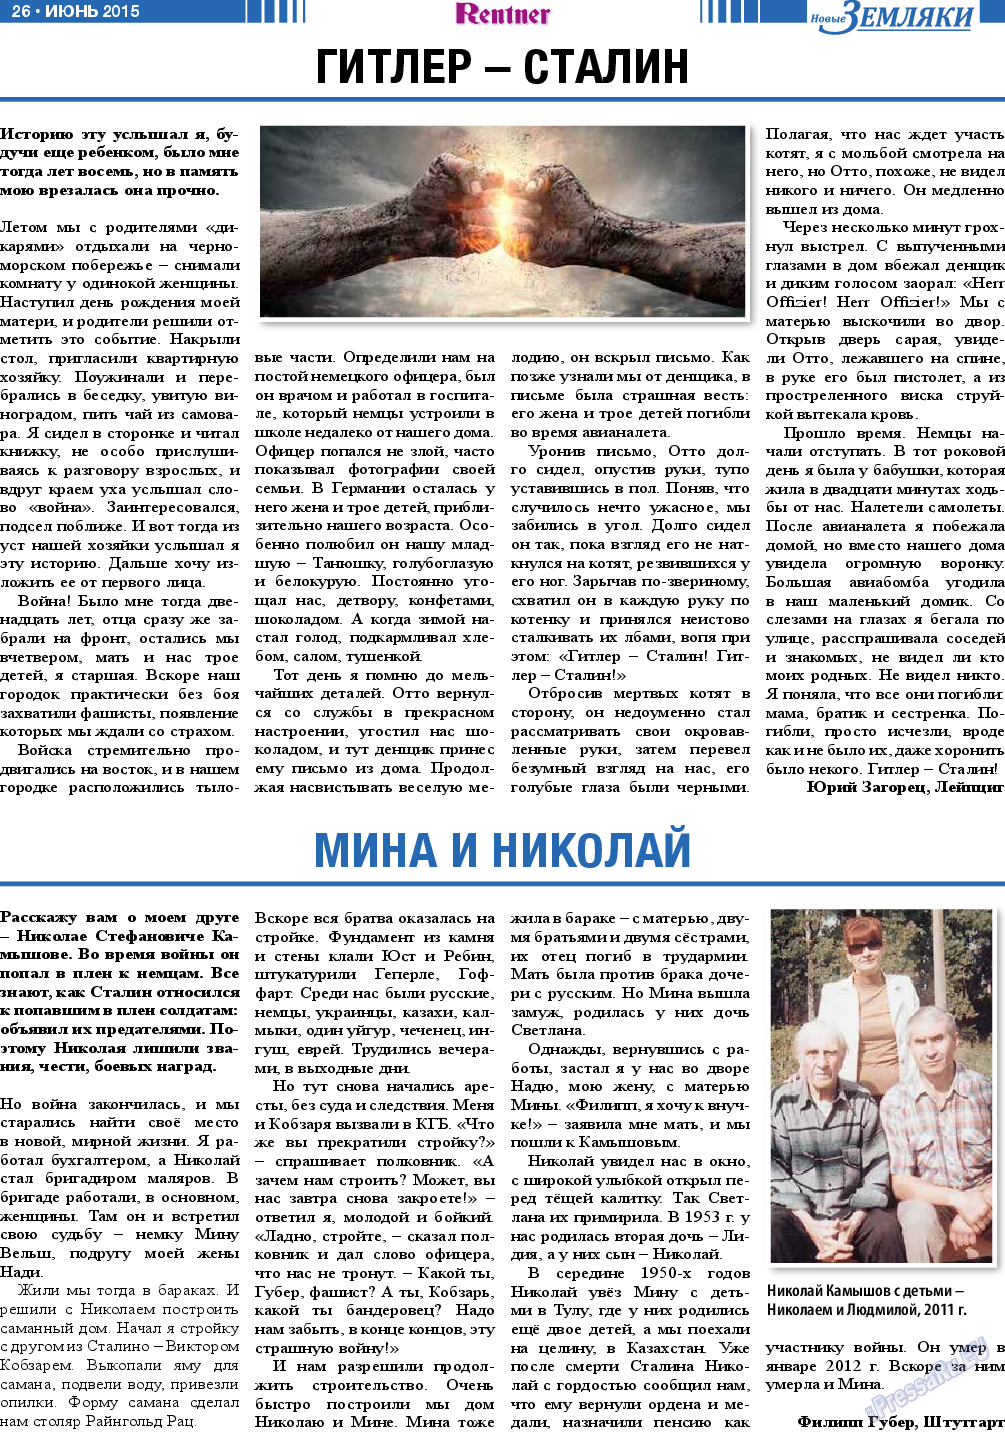 Новые Земляки, газета. 2015 №6 стр.26